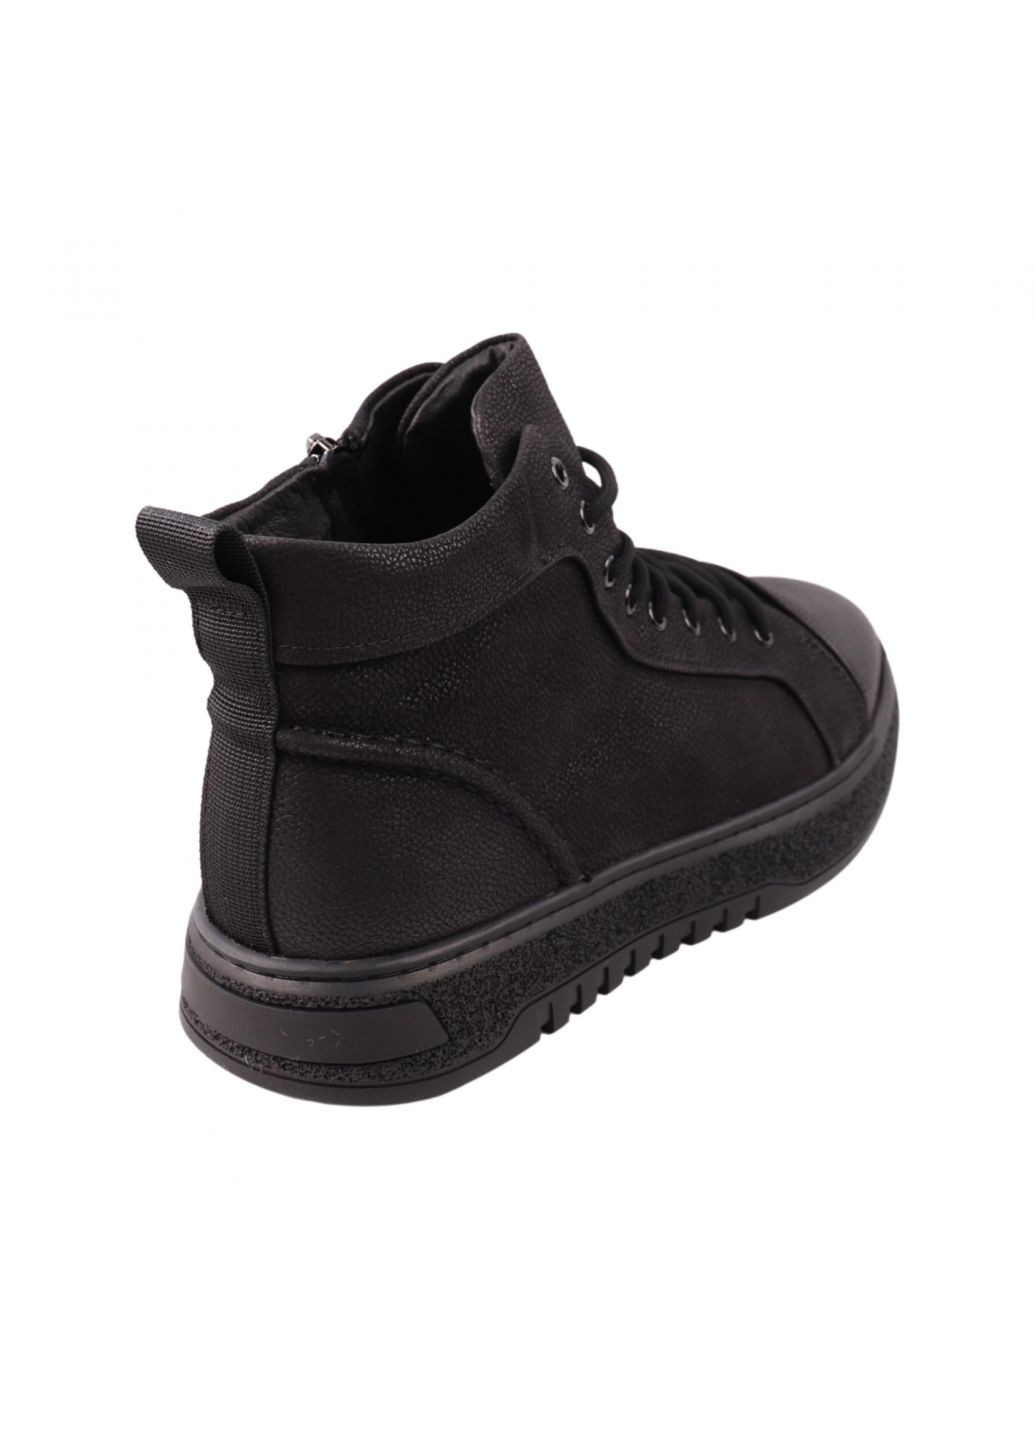 Черные ботинки мужские черные натуральный нубук Lifexpert